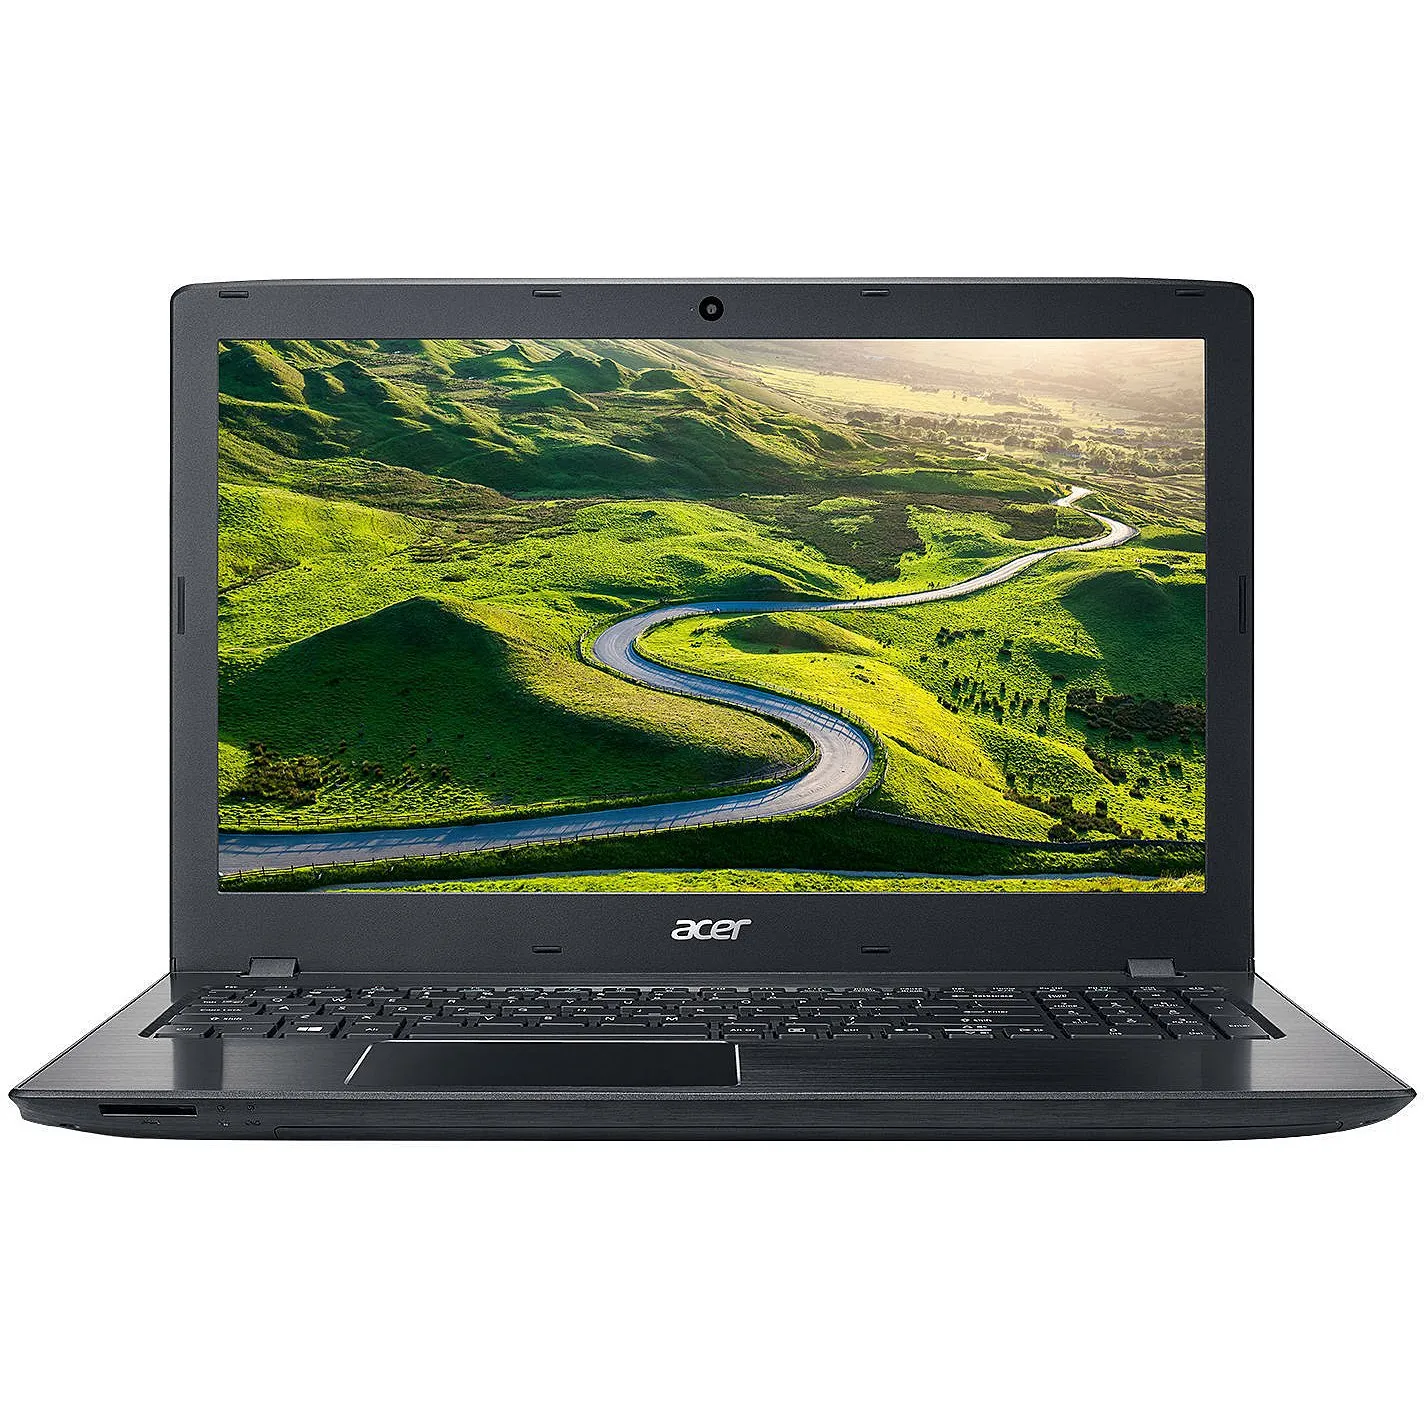 Noutbuk Acer E15/ Intel i5-7200U/ DDR4 4GB/ HDD 500GB/ 15,6" HD LED/ 2GB GeForce GT940MX/ DVD / RUS/ Black#10